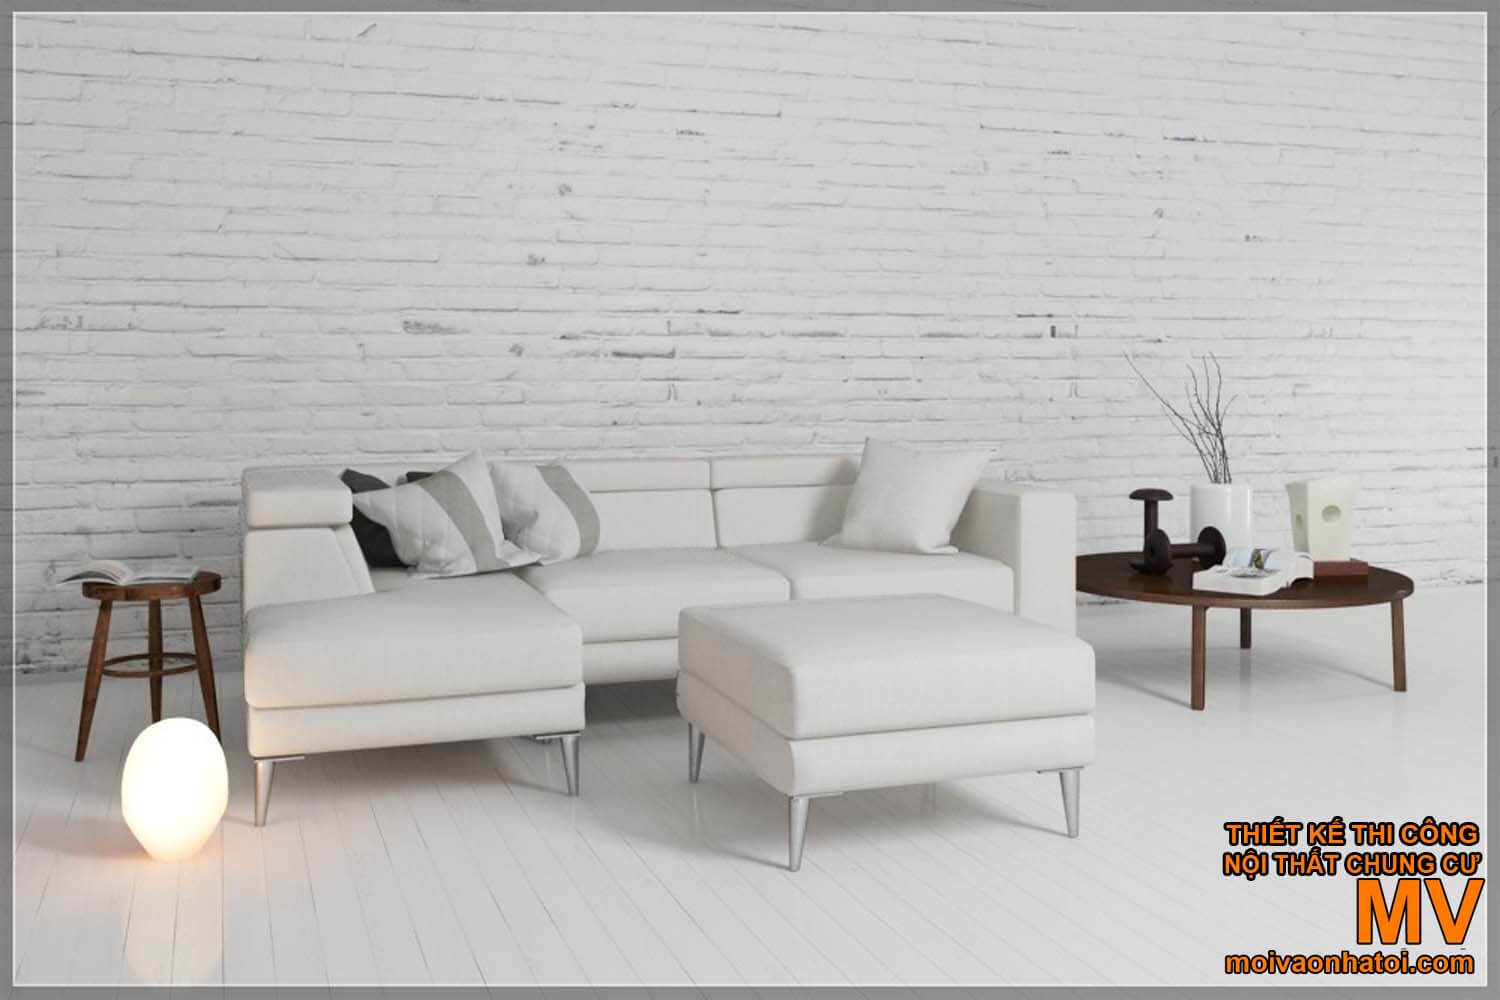 Mẫu bàn ghế sofa scandinavian đơn giản